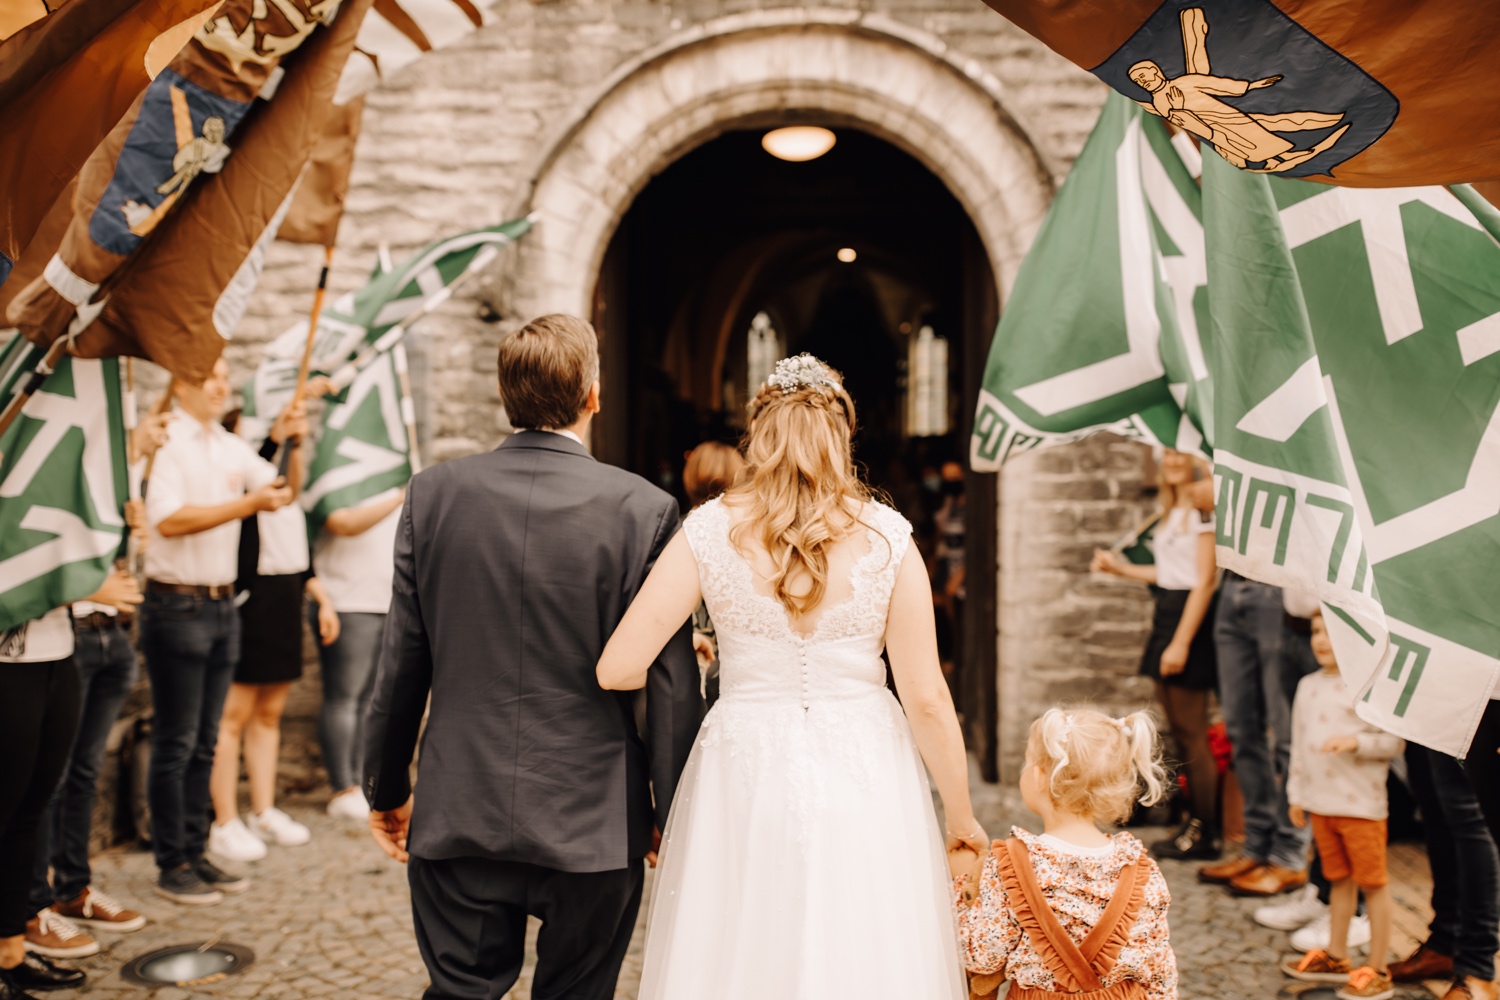 bruid wandelt met vader de kerk van belsele binnen door vlaggen van de jeugdbeweging